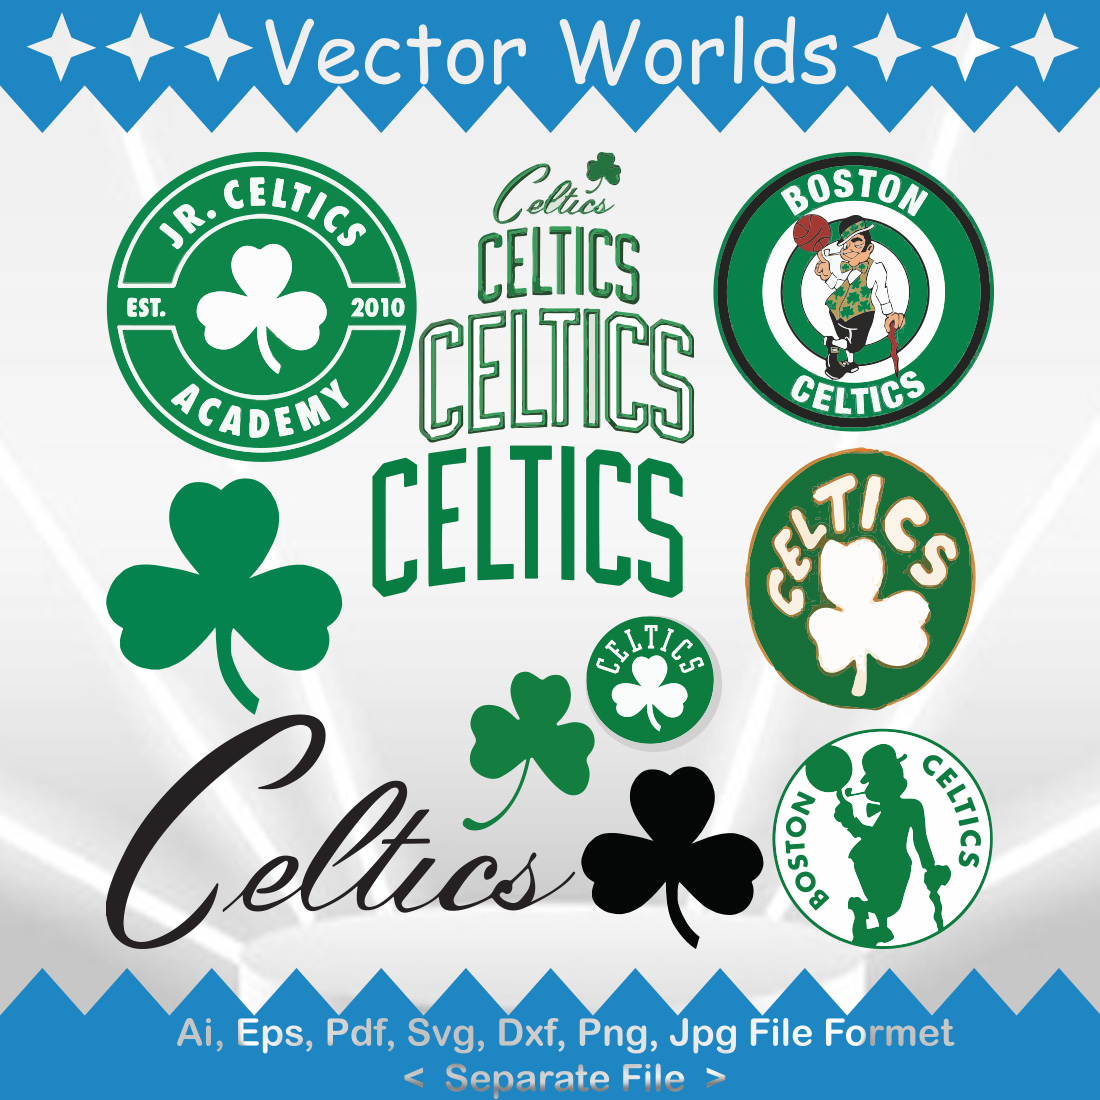 Boston Celtics logo SVG Vector Design cover image.